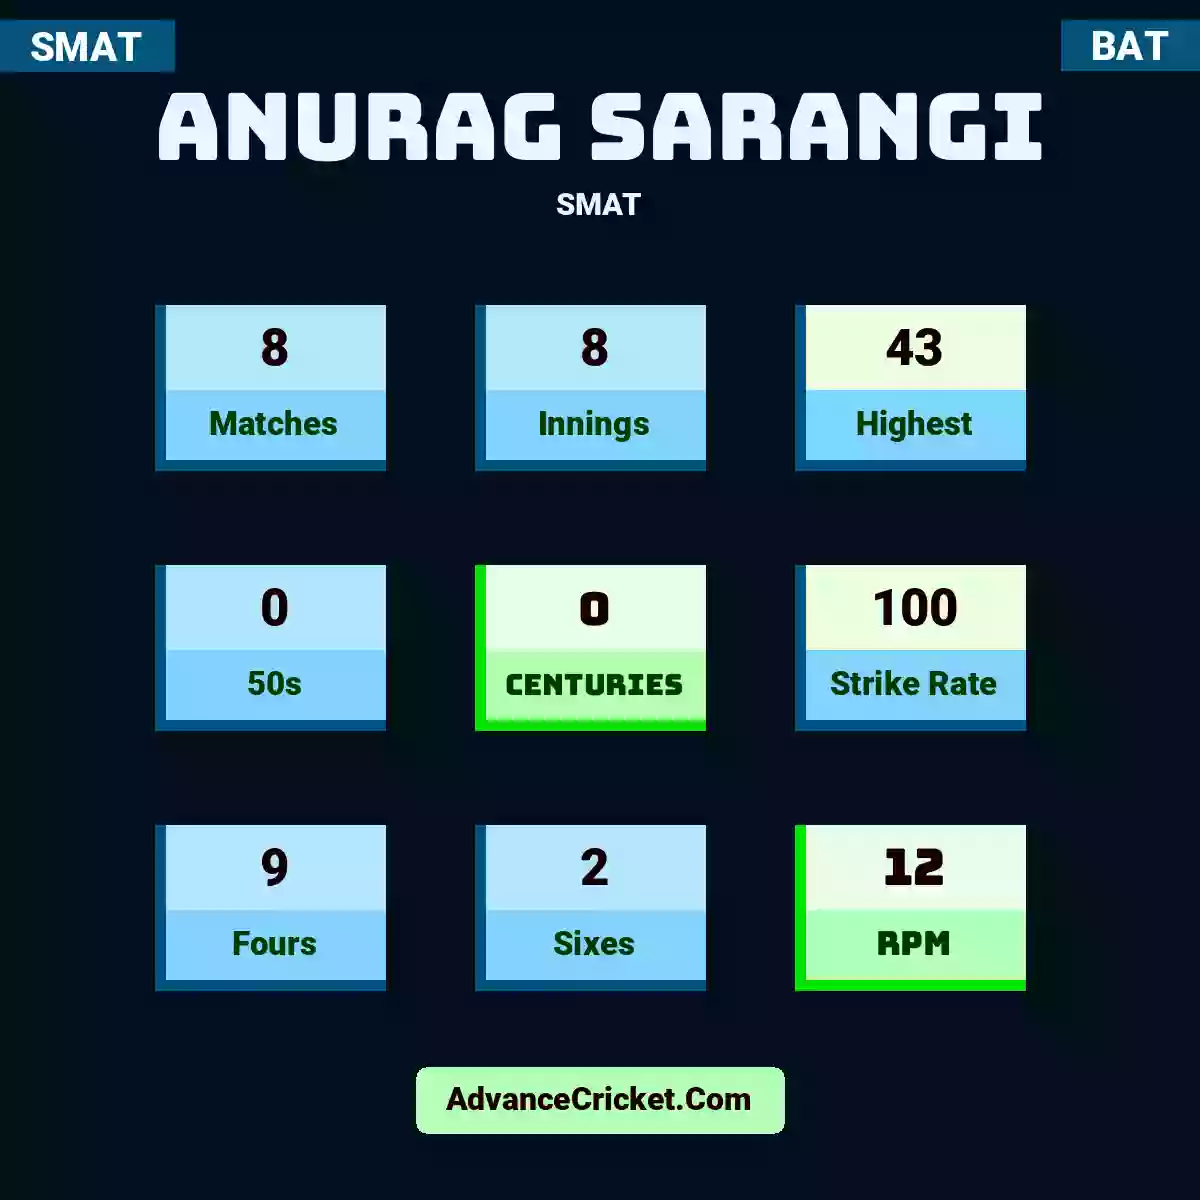 Anurag Sarangi SMAT , Anurag Sarangi played 8 matches, scored 43 runs as highest, 0 half-centuries, and 0 centuries, with a strike rate of 100. A.Sarangi hit 9 fours and 2 sixes, with an RPM of 12.